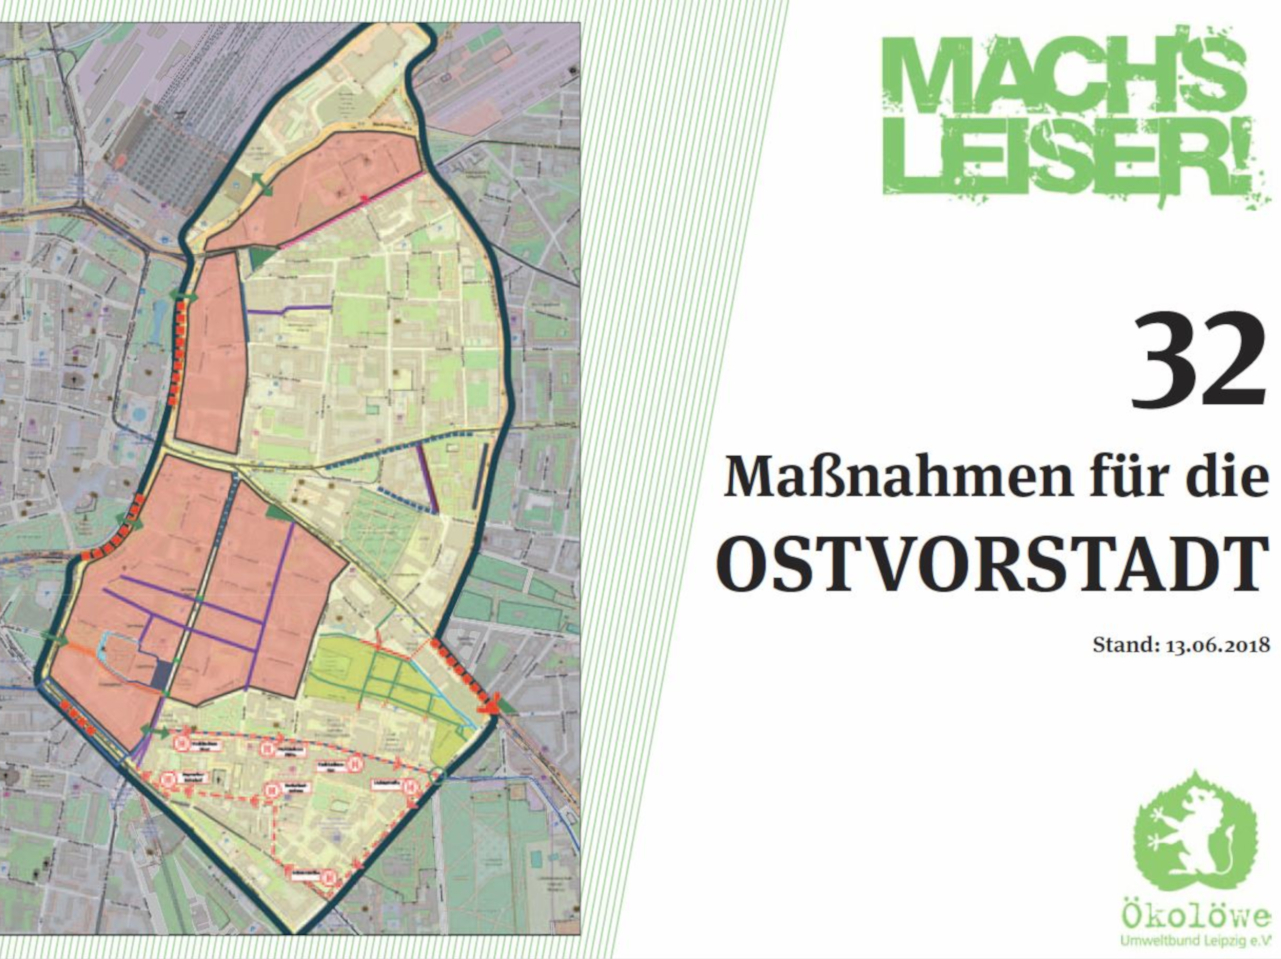 Titelblatt des Maßnahmenkatalog für Mach's leiser in der Leipziger Ostvorstadt